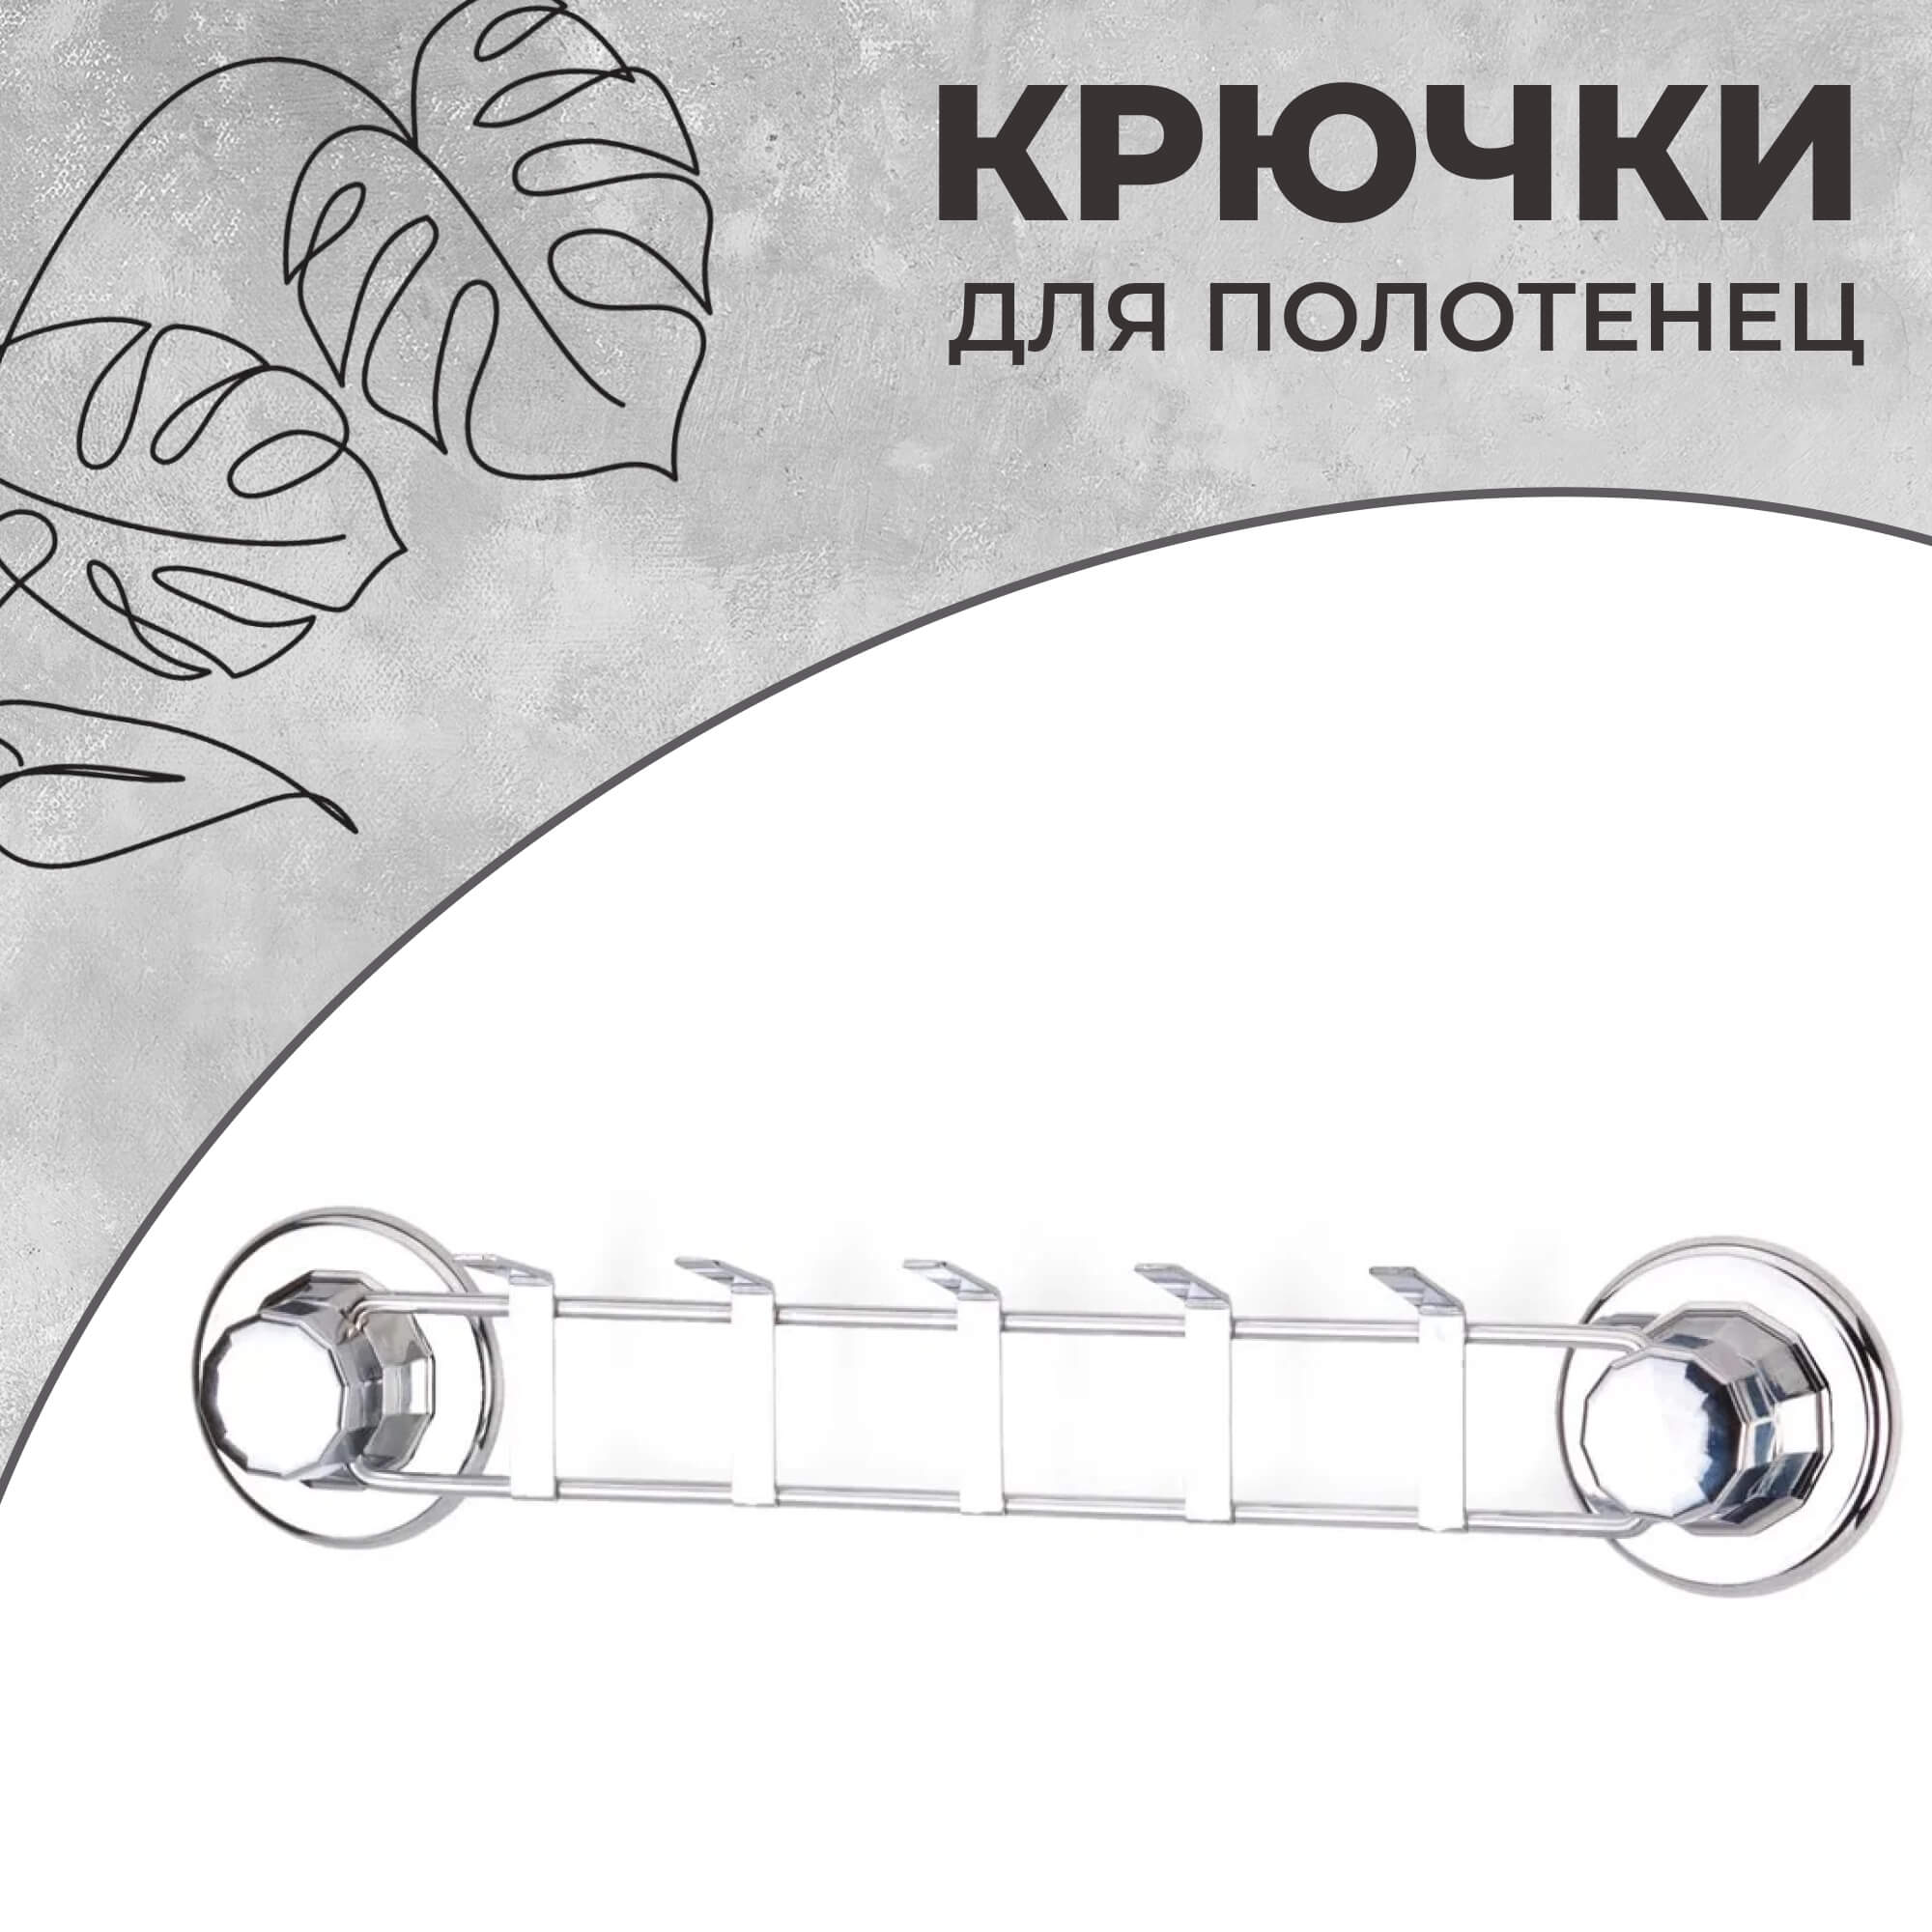 Крючки для полотенец Teknotel на присосках хром крючки для полотенец teknotel на присосках хром